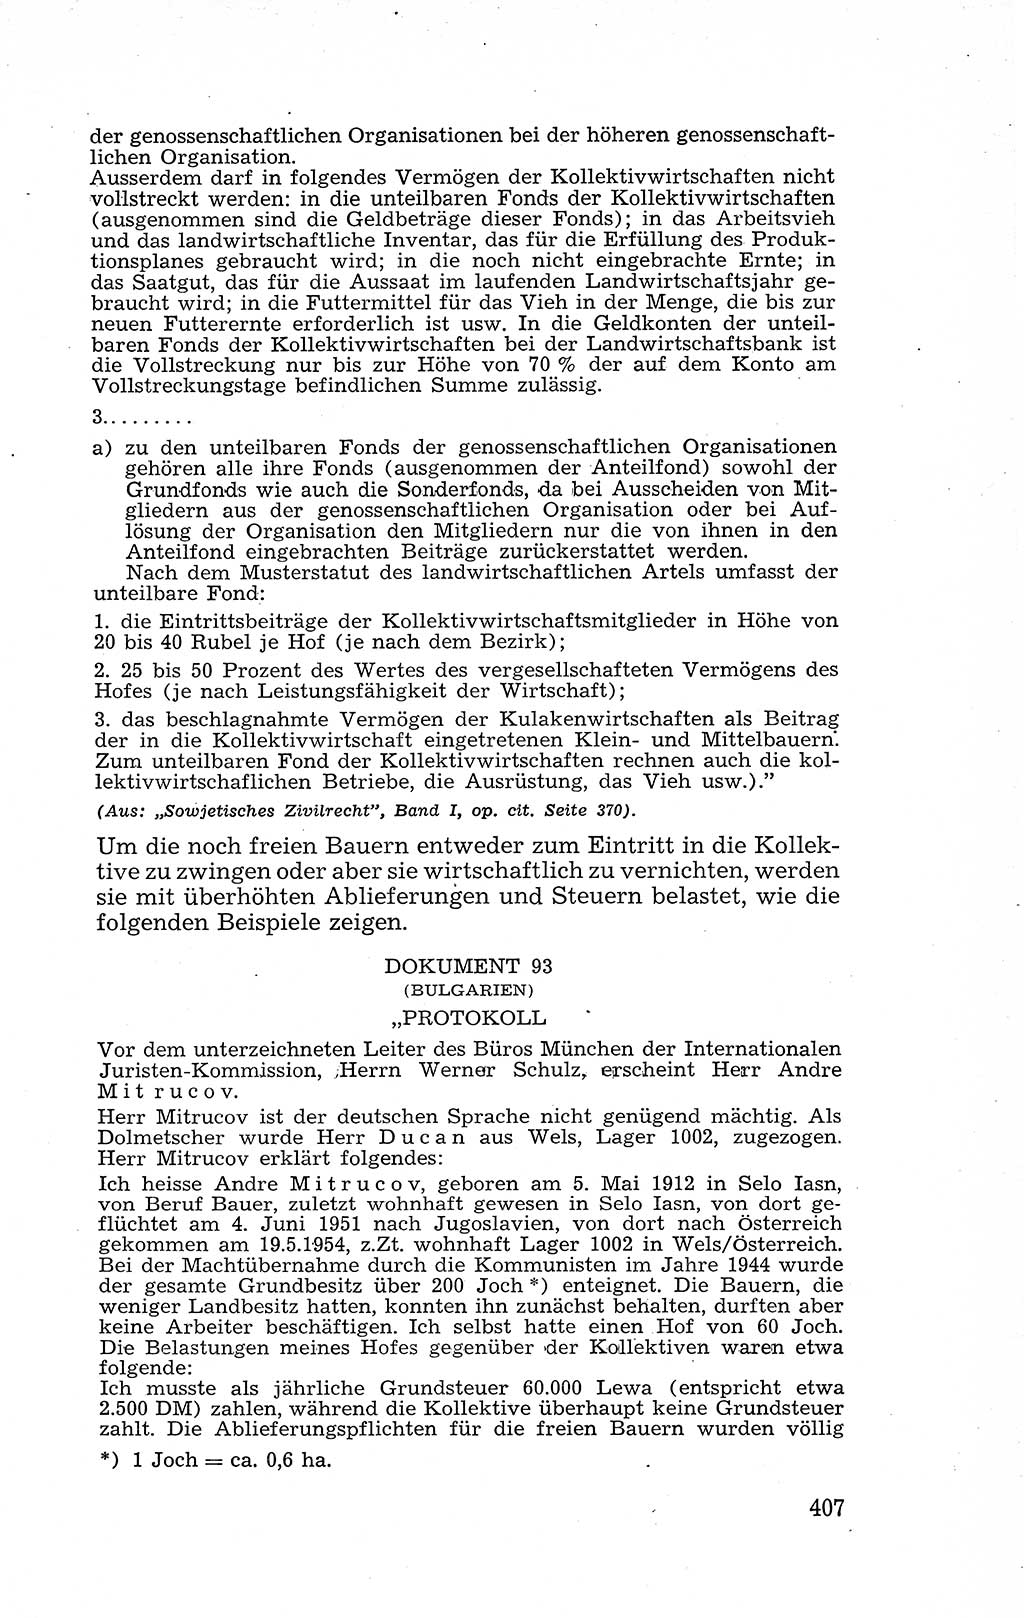 Recht in Fesseln, Dokumente, Internationale Juristen-Kommission [Bundesrepublik Deutschland (BRD)] 1955, Seite 407 (R. Dok. IJK BRD 1955, S. 407)